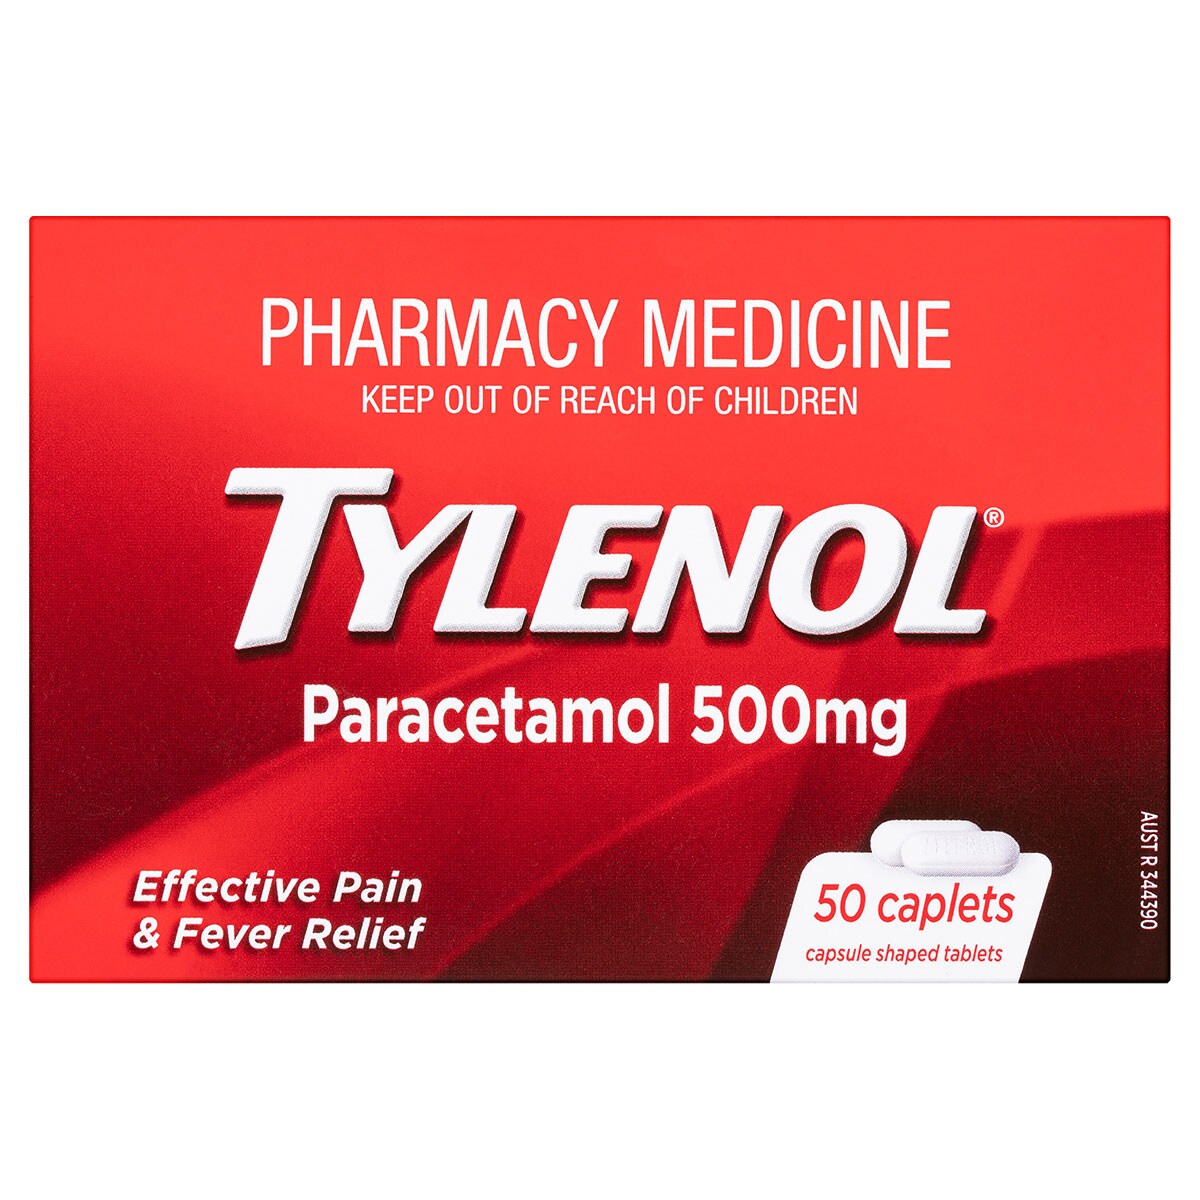 Tylenol Pain & Fever Relief 50 Caplets